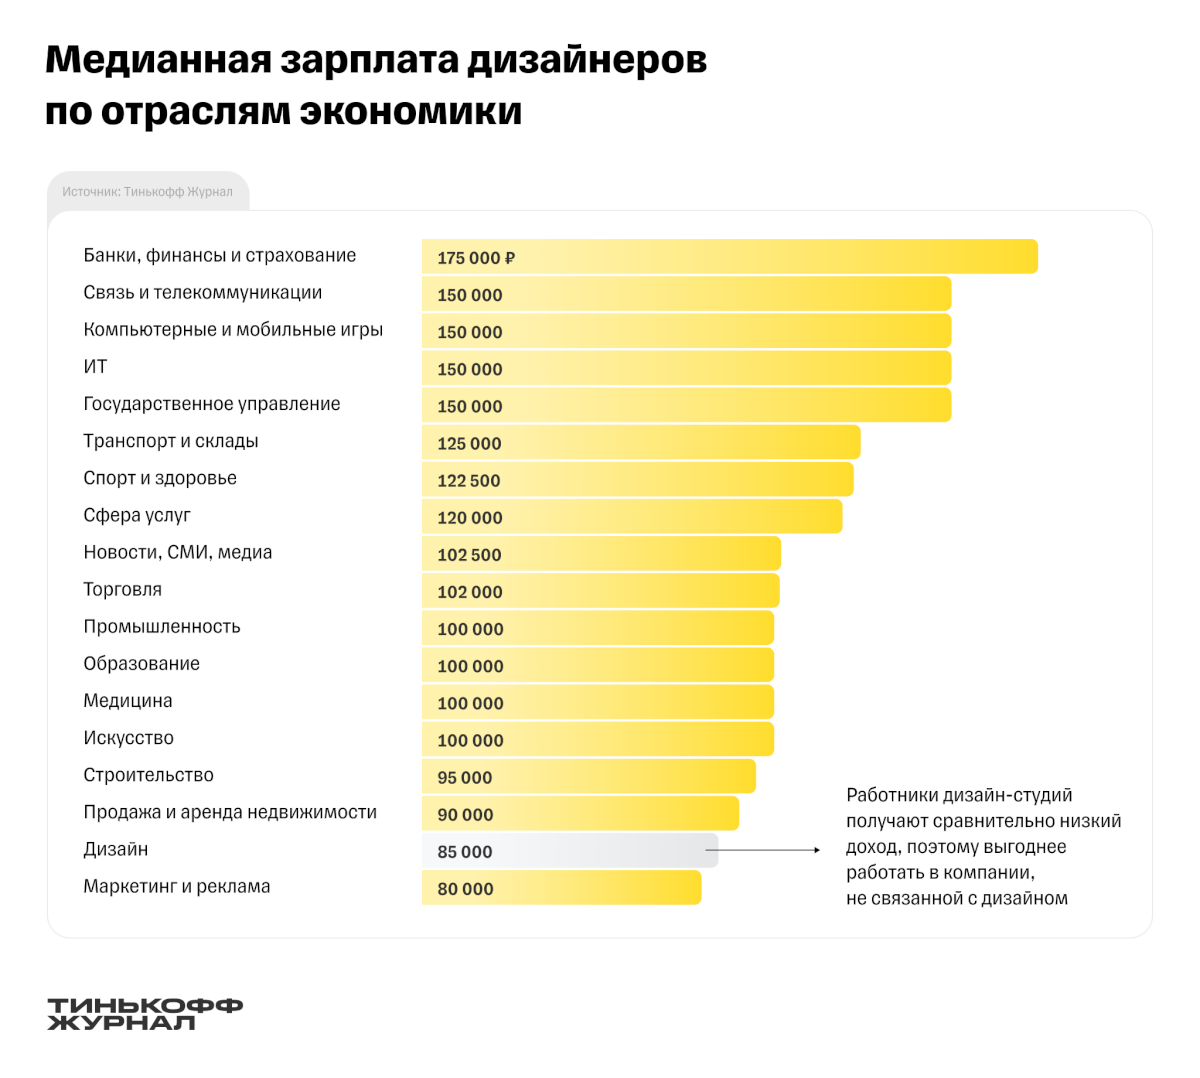 Зарплаты дизайнеров в России